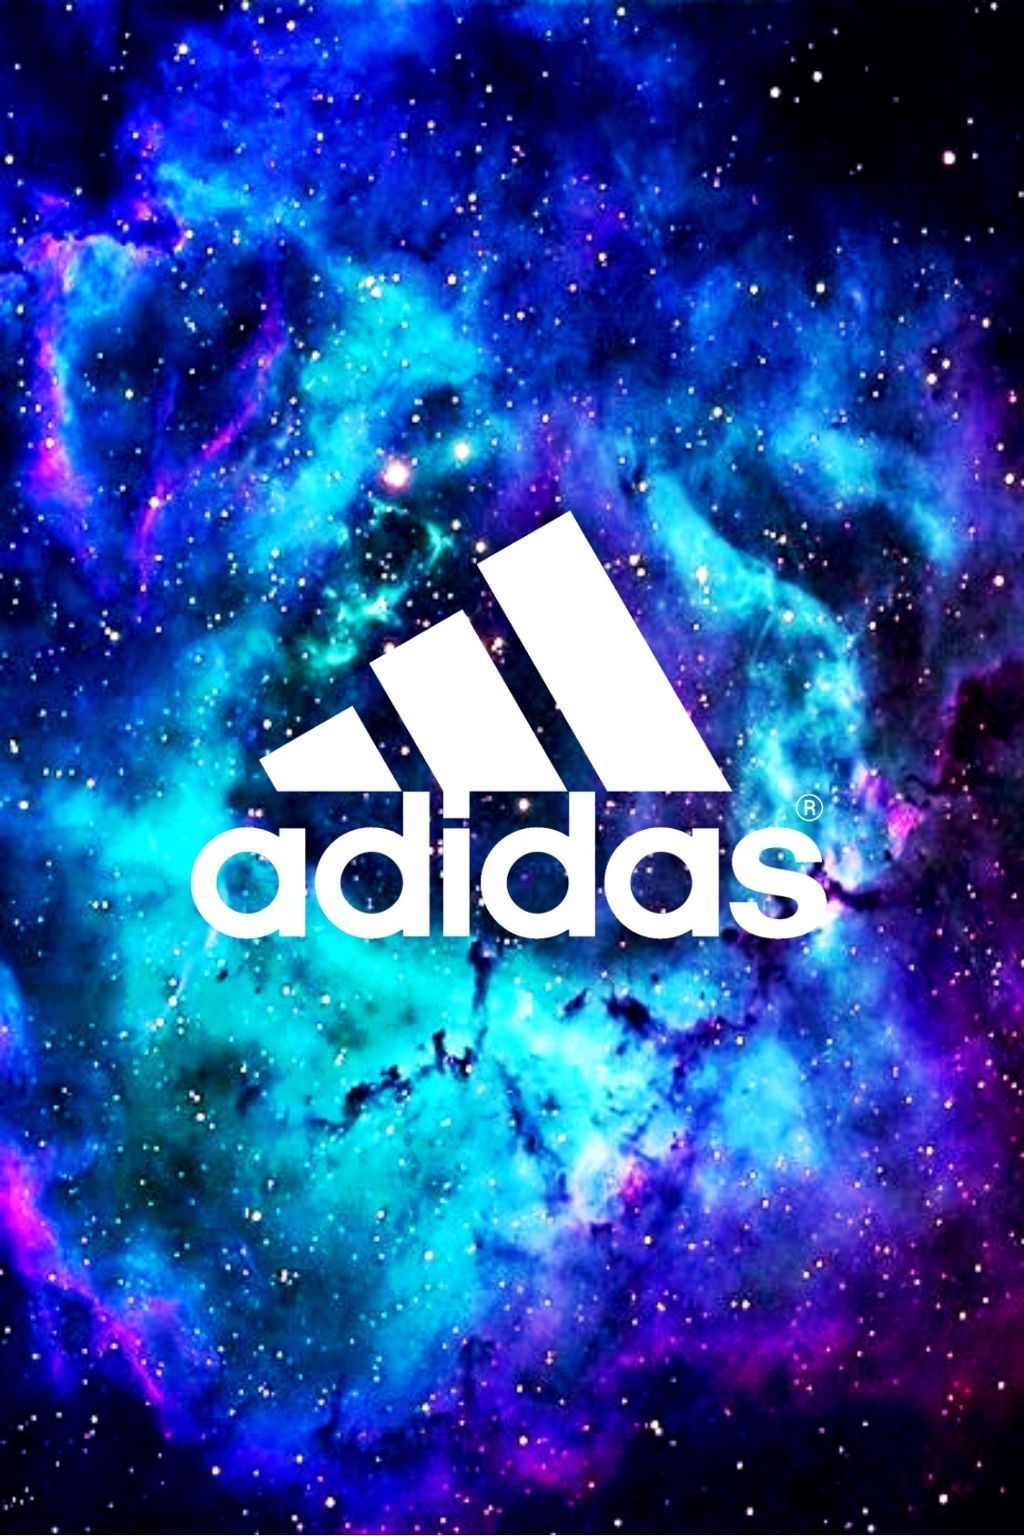 adidas galaxy background